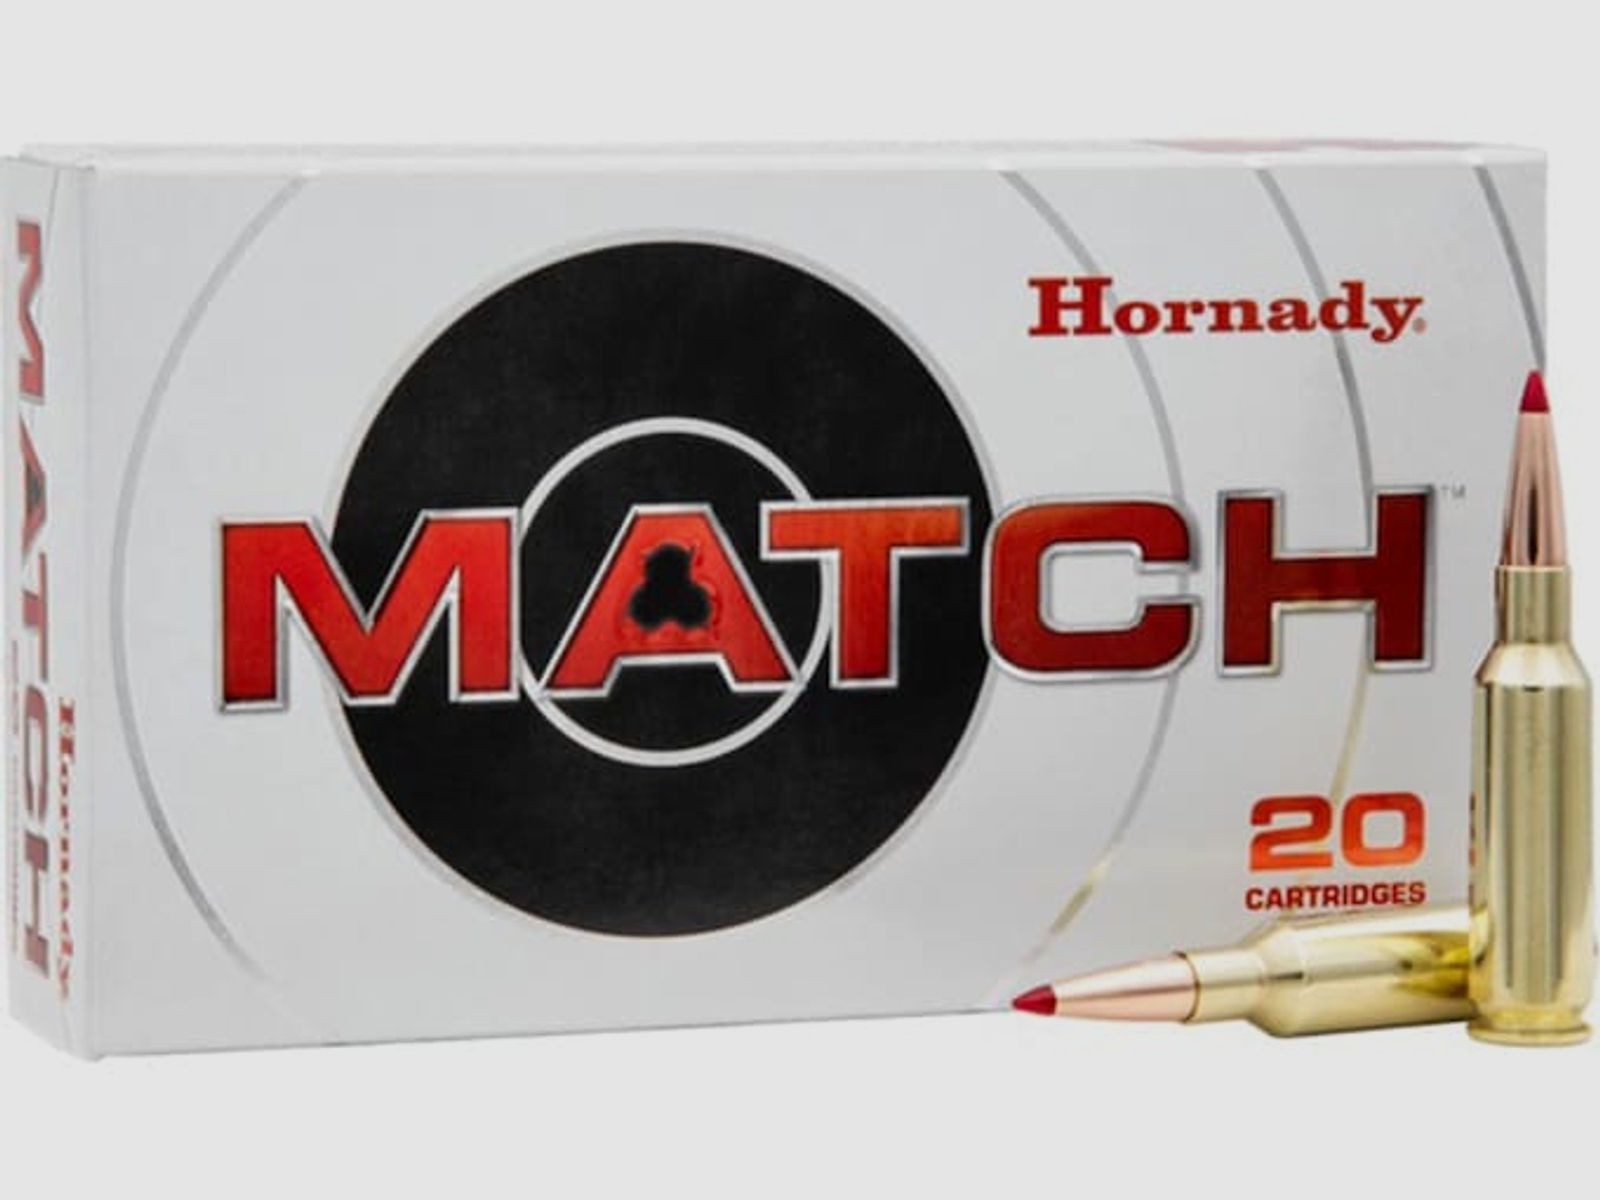 Hornady Match .224 Valkyrie 88GR ELD Match 20 Patronen